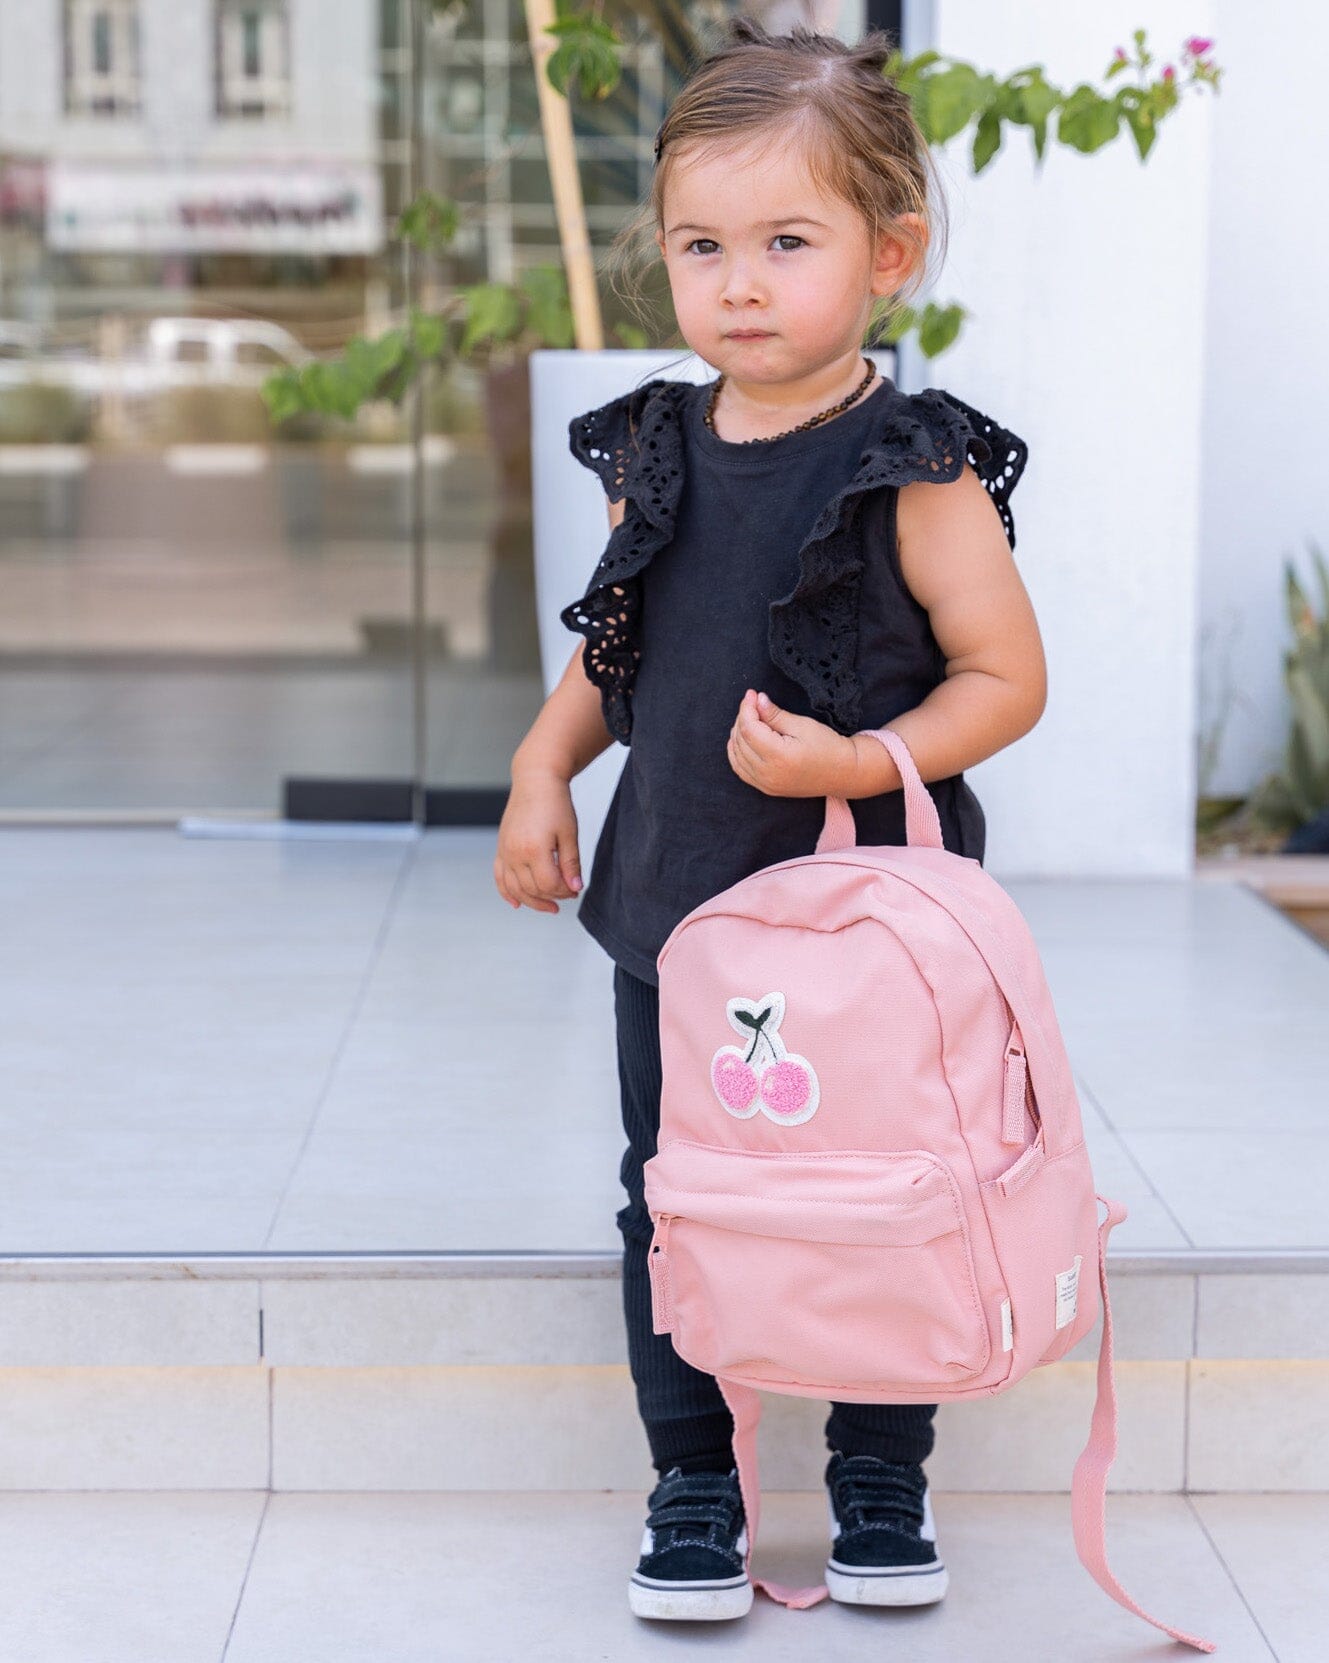 Mini Backpack - Blush Pink